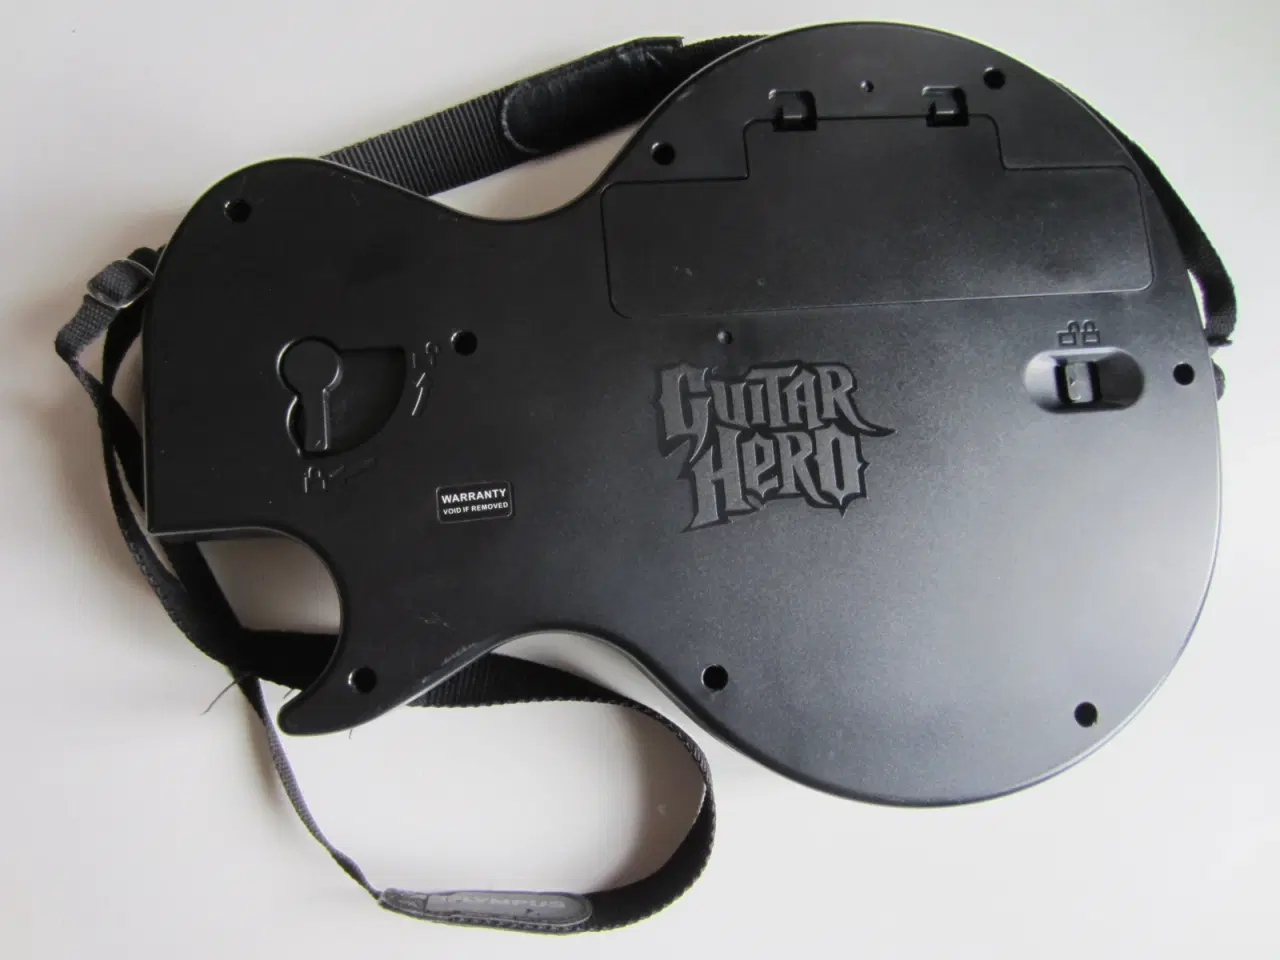 Billede 2 - Guitar Hero Wii Controller med rem, mem